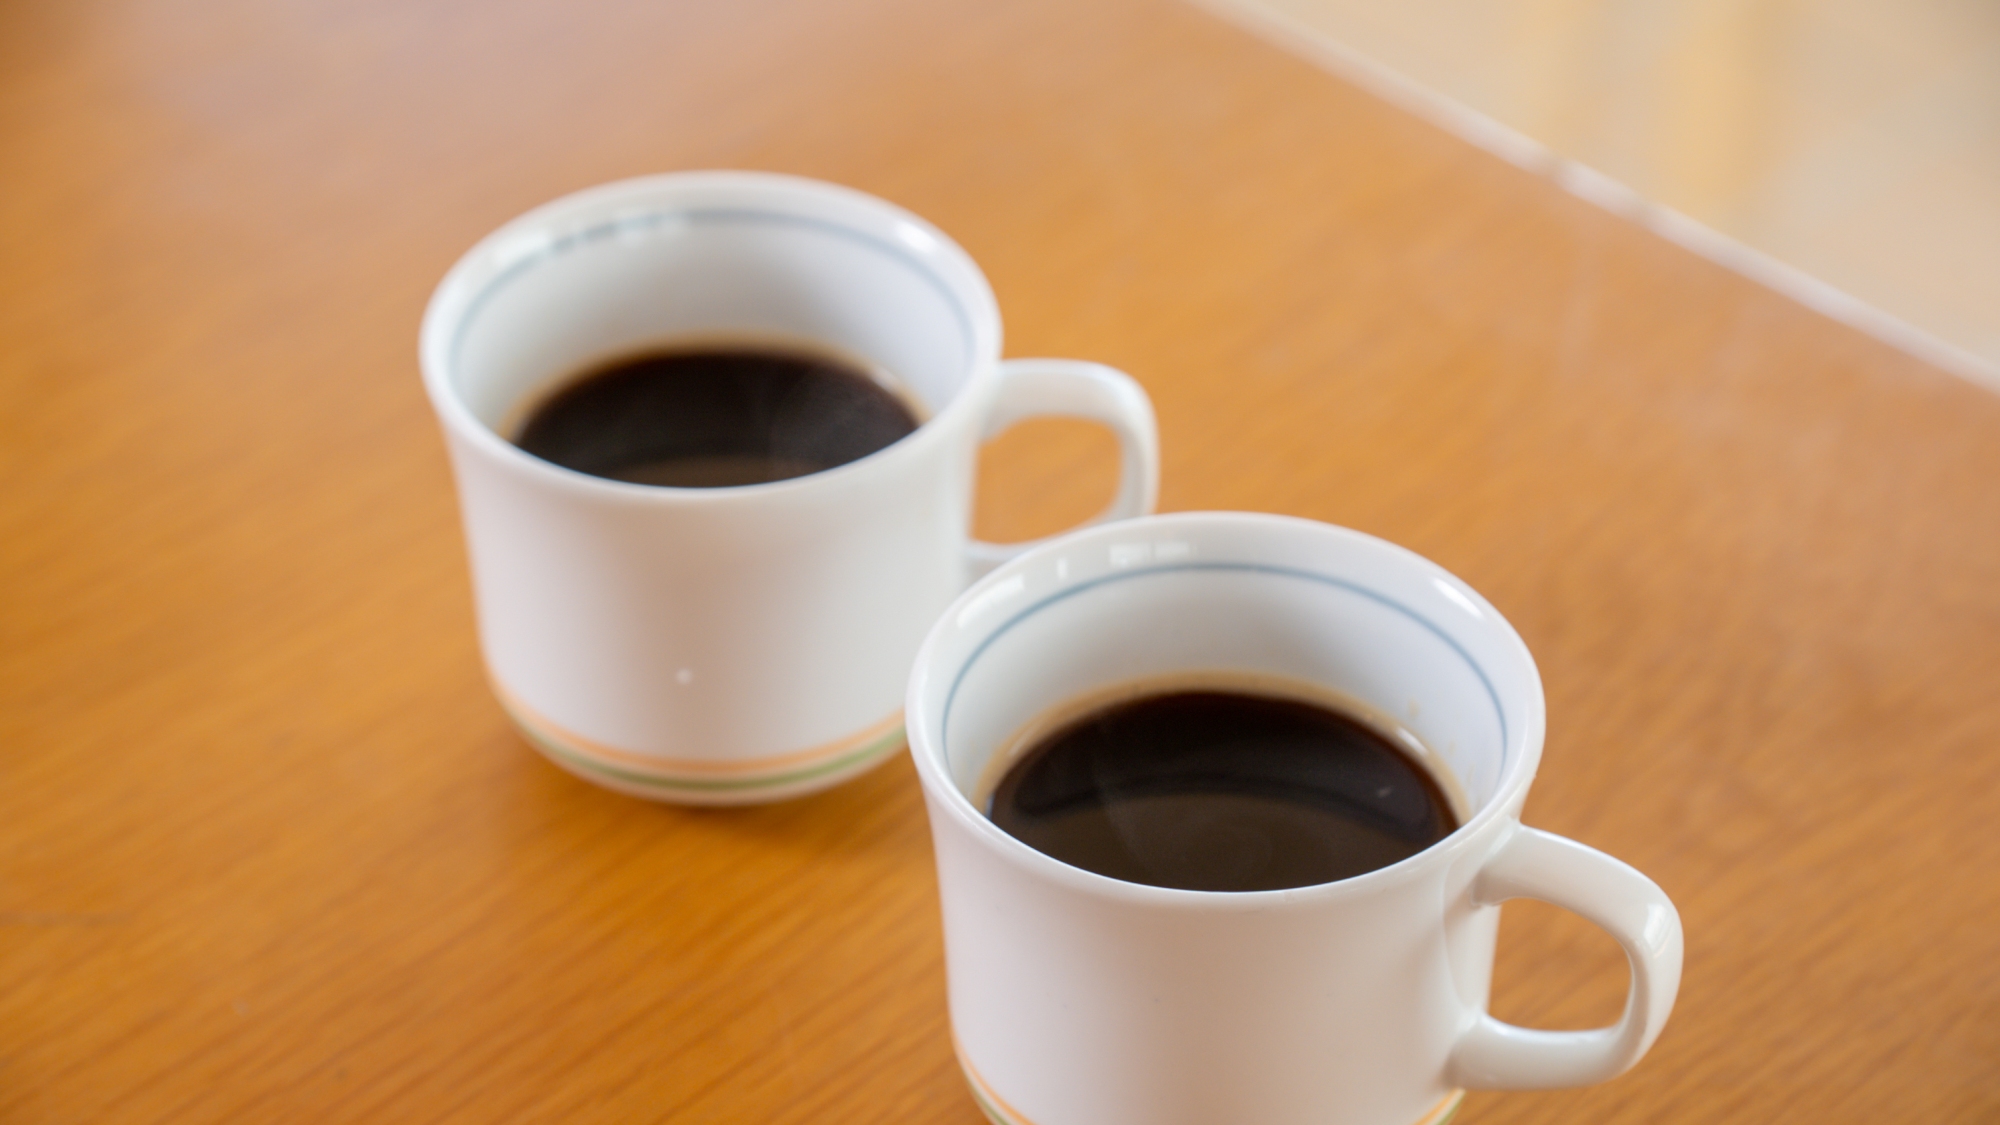 【朝食】ホットコーヒーを飲んで素敵な一日をスタートしてください